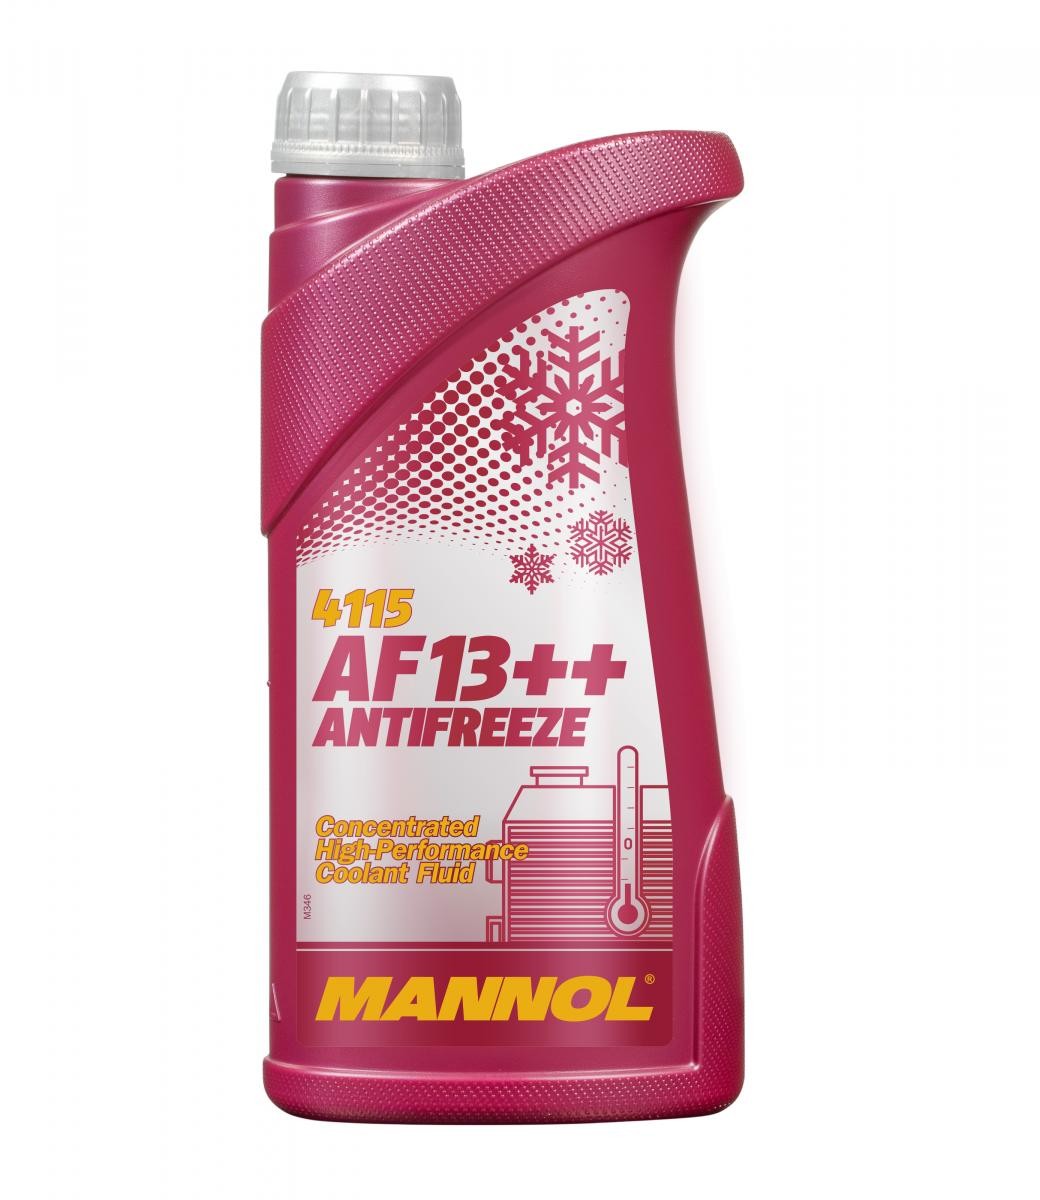 Roller Kühlmittel G12 Rot, 1l, -38(50/50) MANNOL AF13++, High-performance MN4115-1